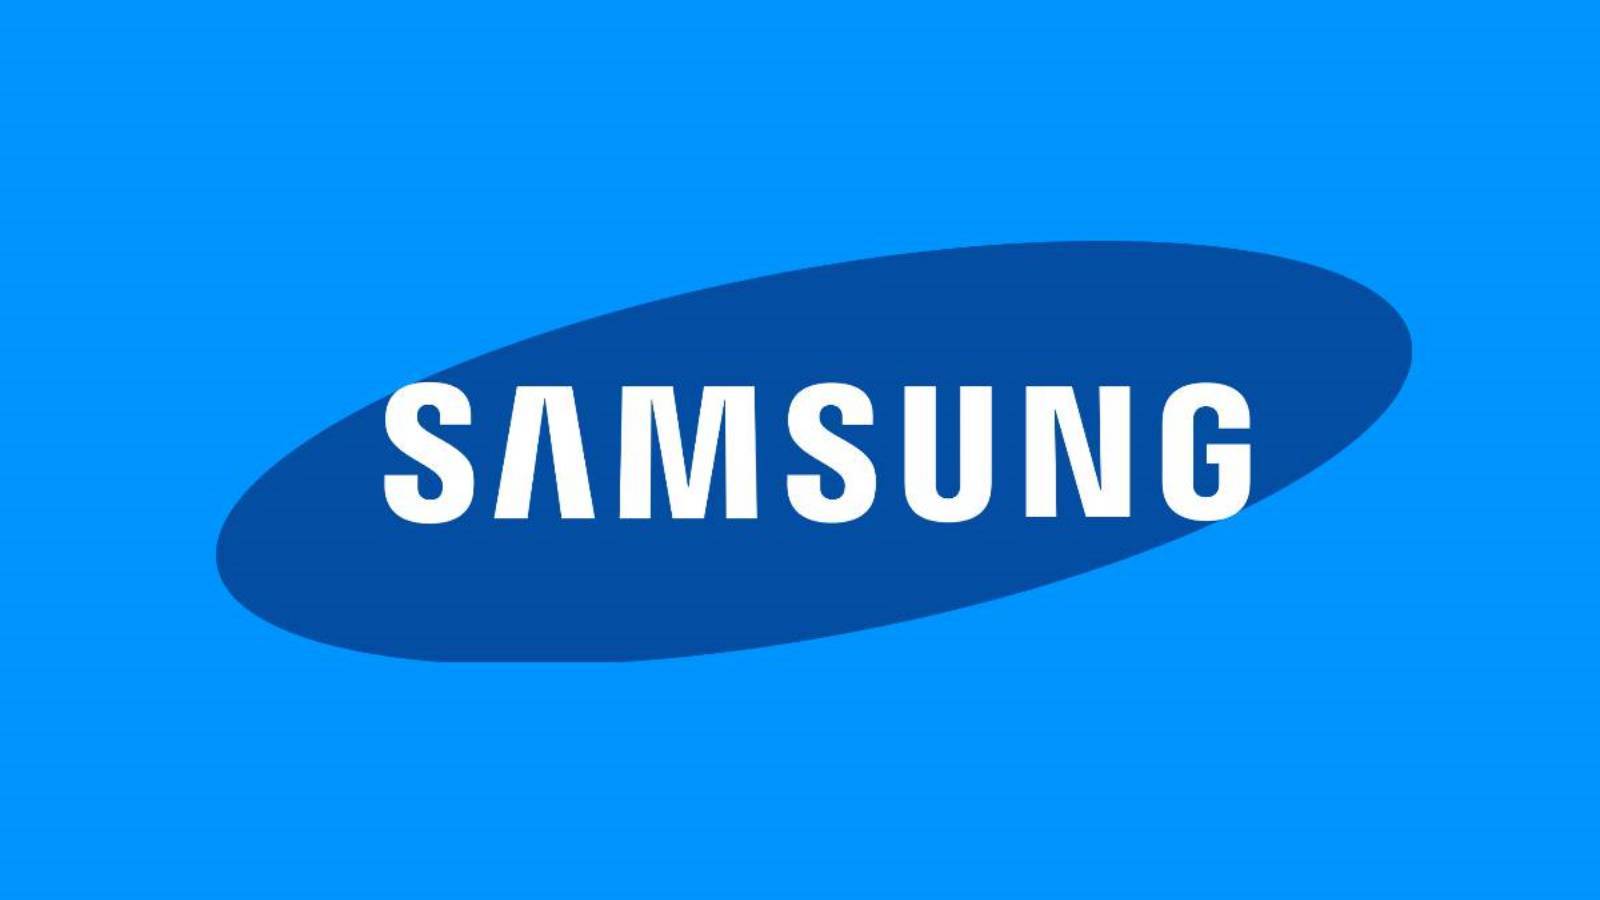 Samsung annuncia un IMPORTANTE aggiornamento Android per i telefoni GALAXY